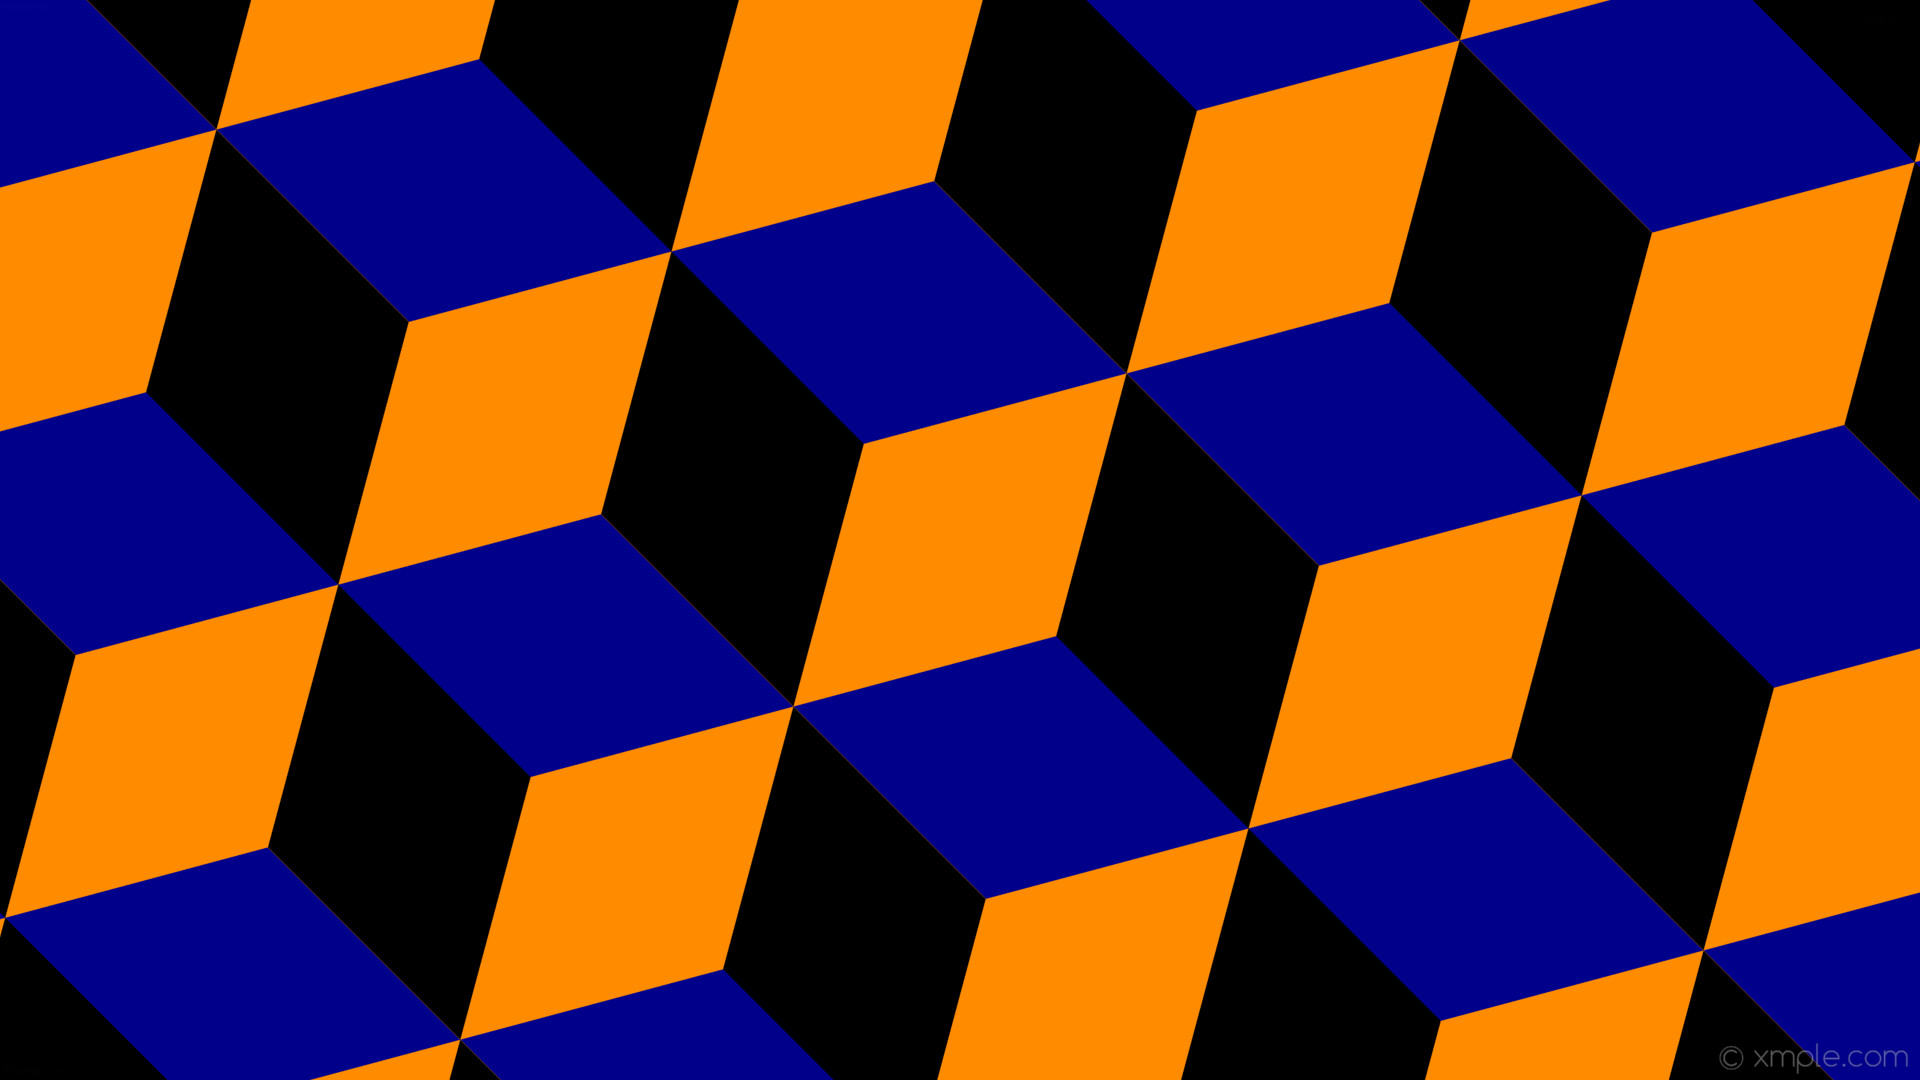 Wallpaper 3d Cubes Blue Orange Black Dark Orange Dark Orange Black And Blue Background Hd Wallpaper Backgrounds Download